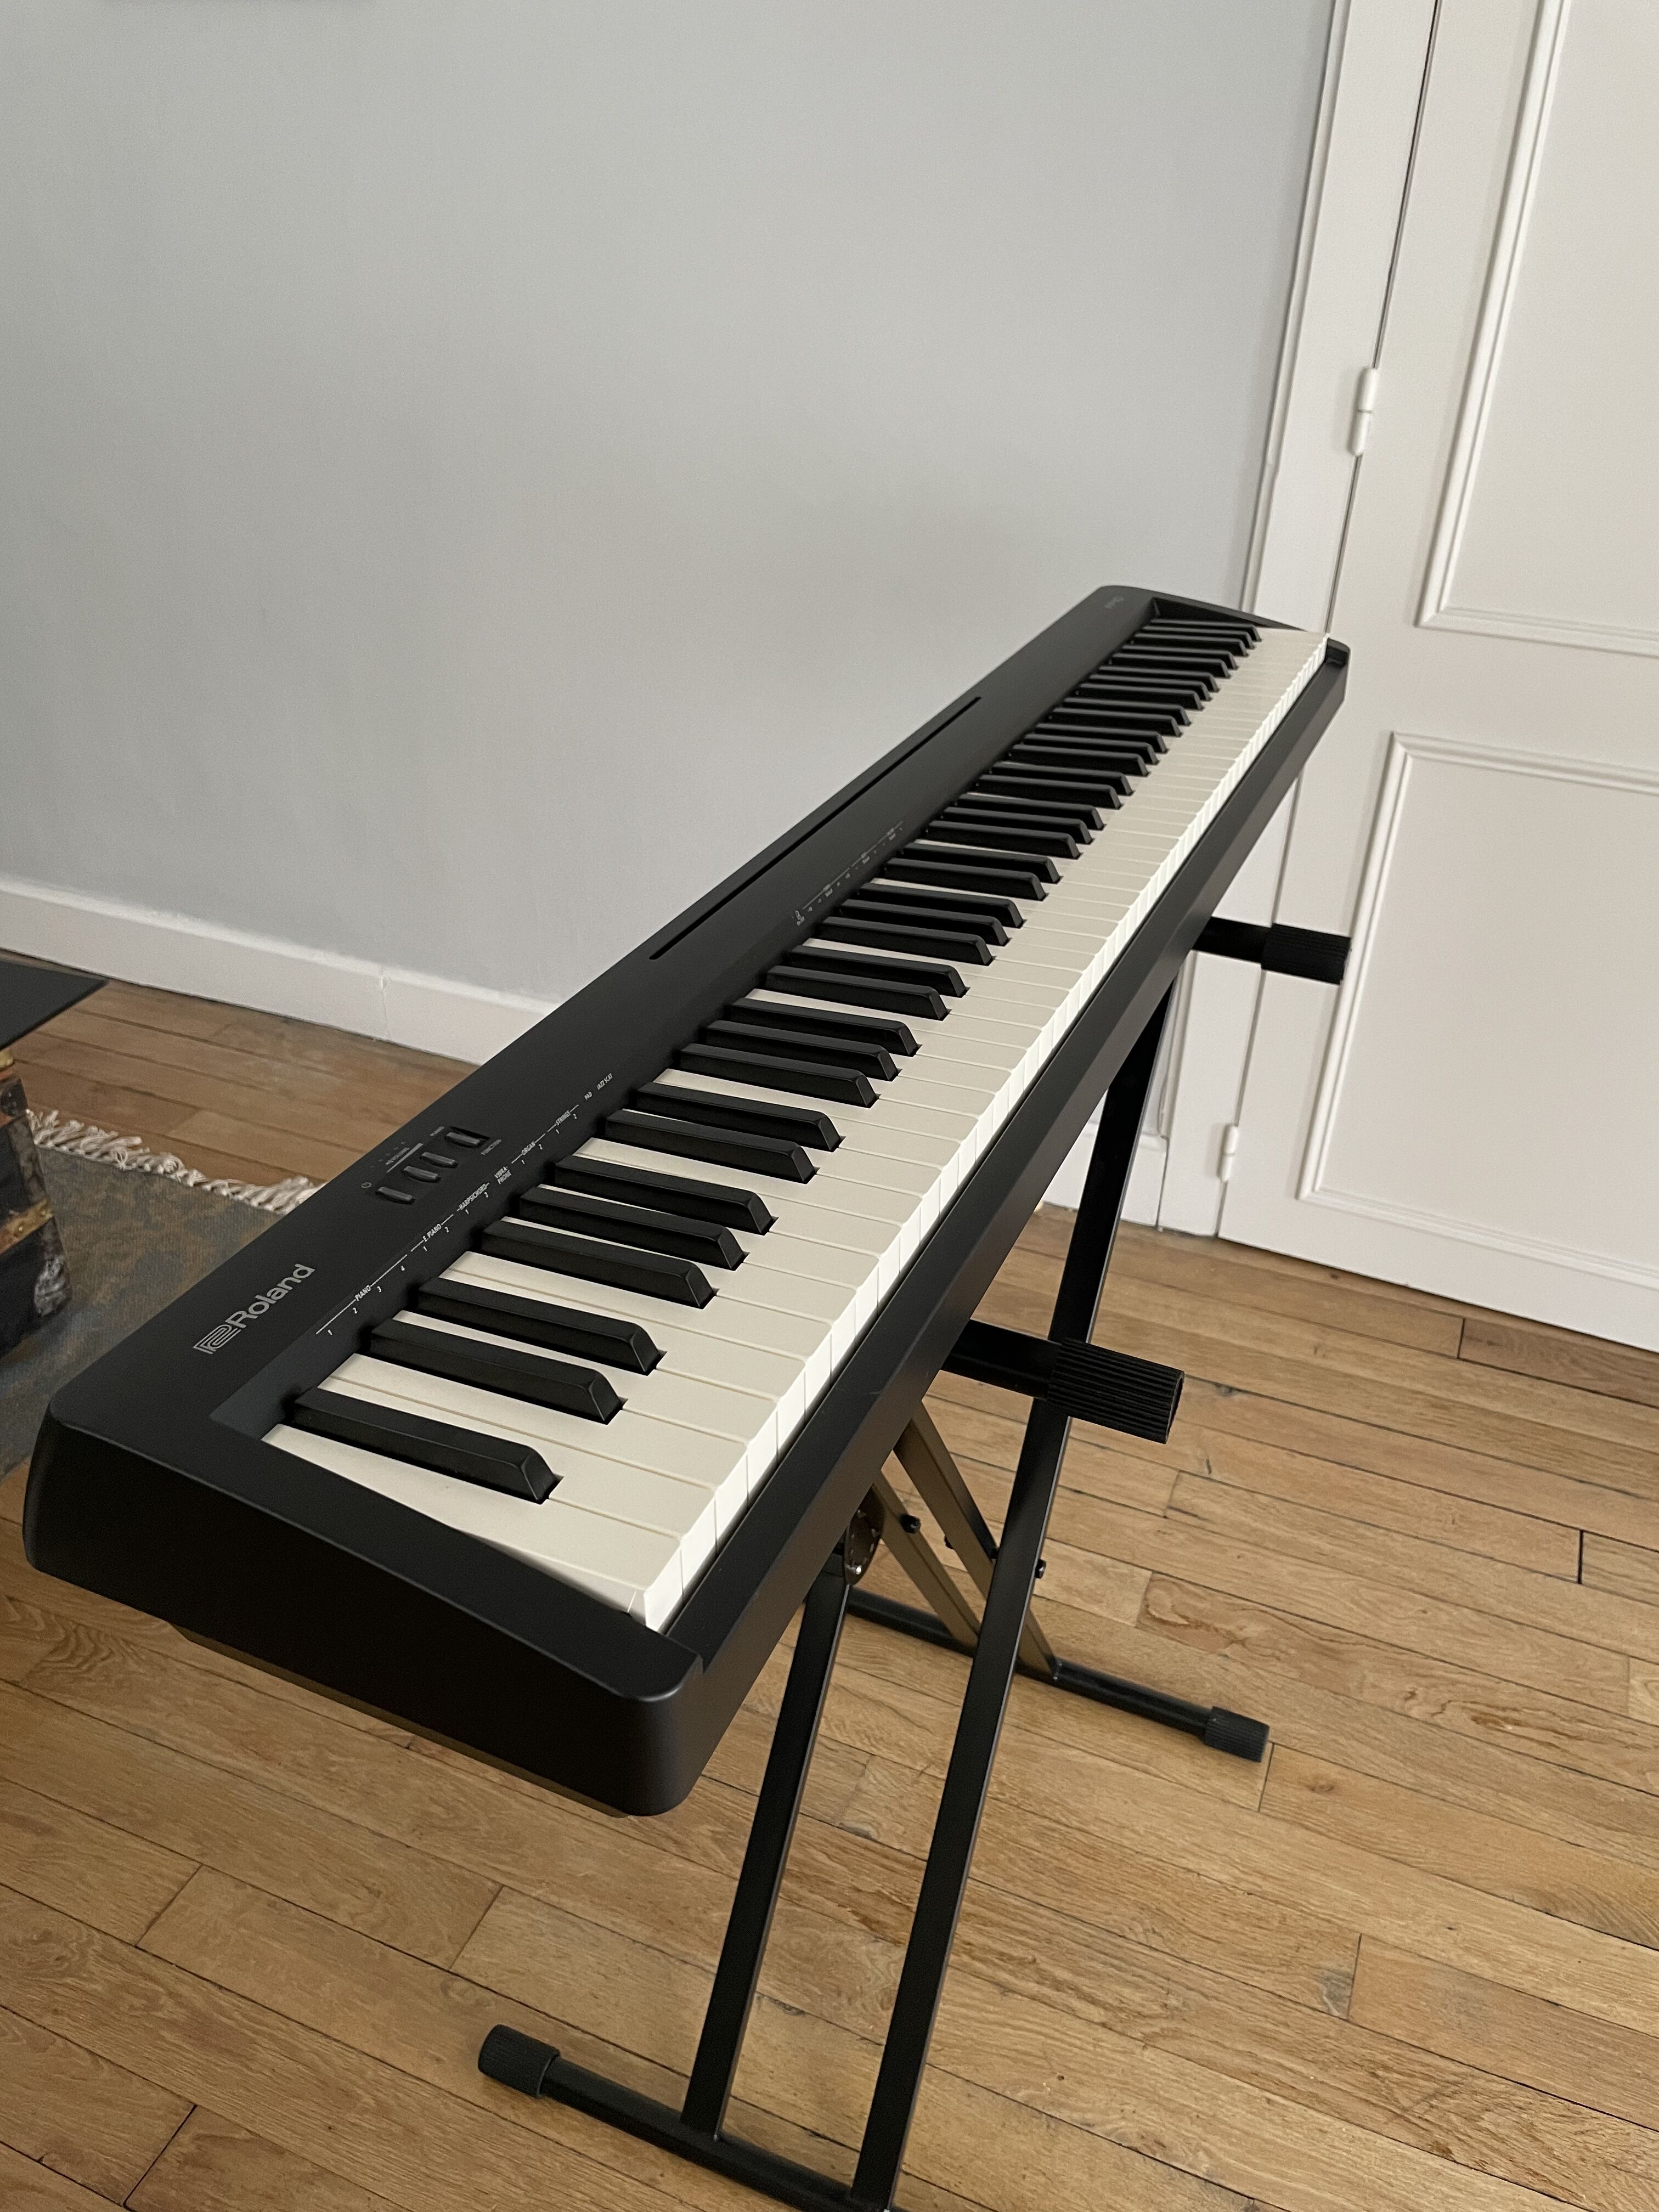 ROLAND HP-330 piano numérique meuble